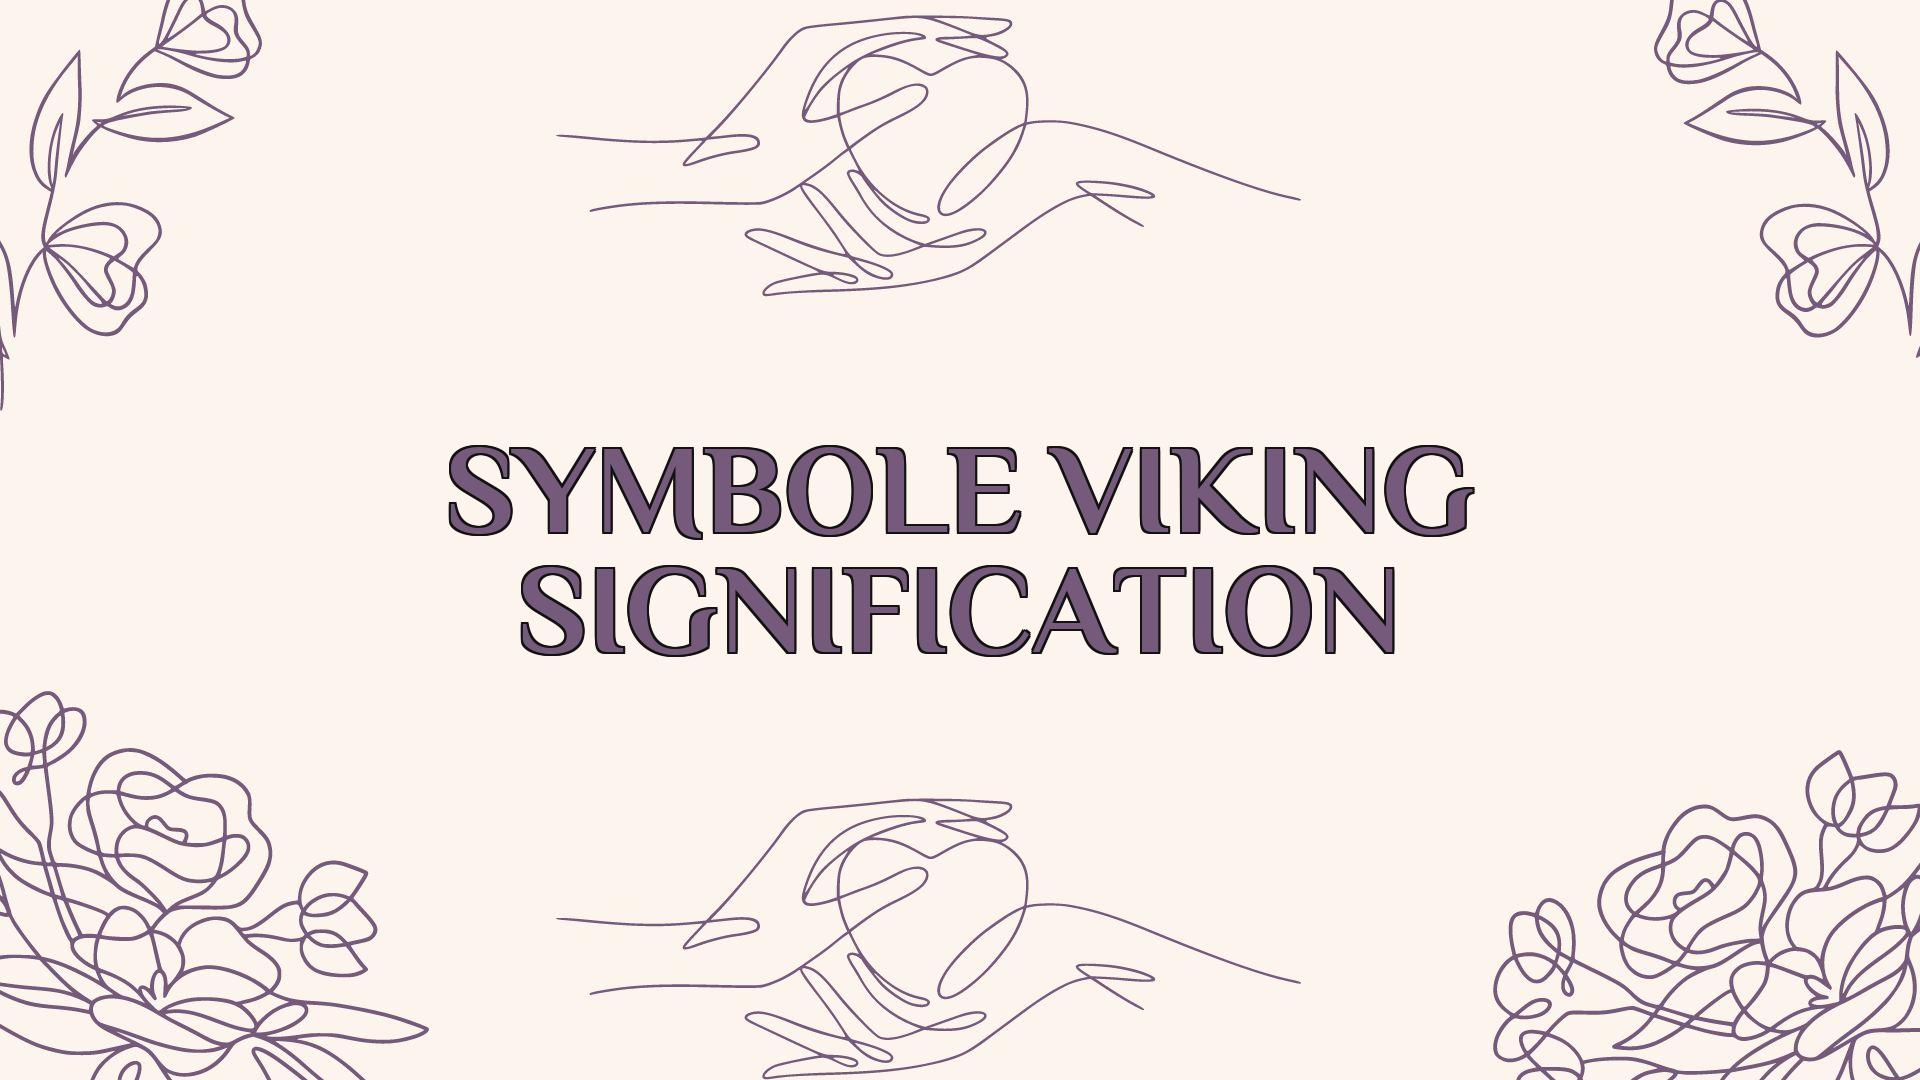 symbole viking signification